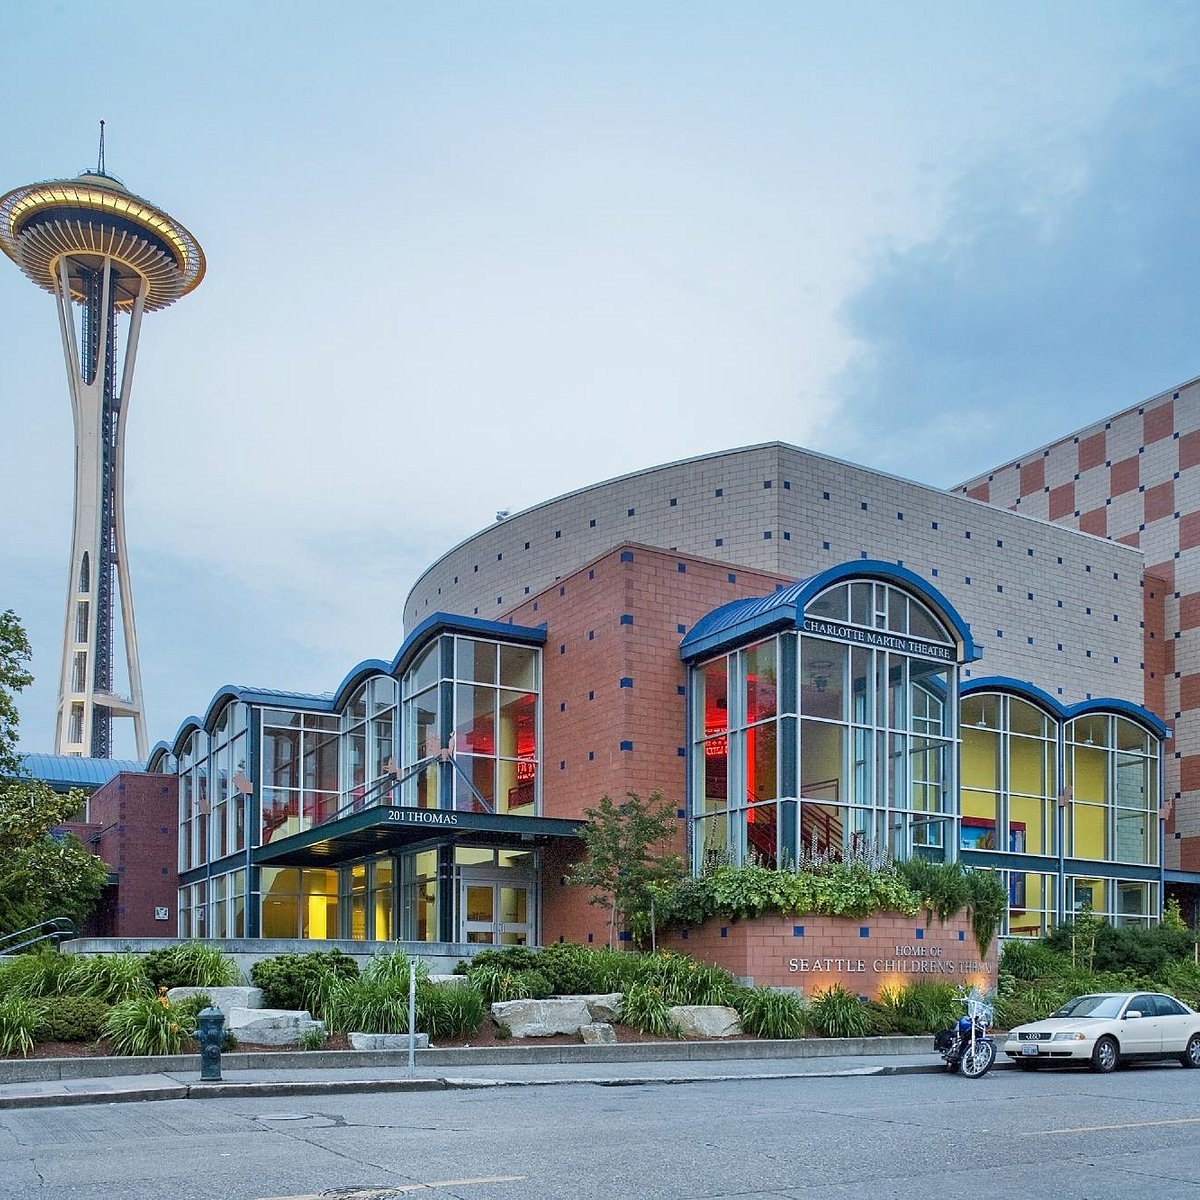 Seattle Children's Theatre 2022 Alles wat u moet weten VOORDAT je